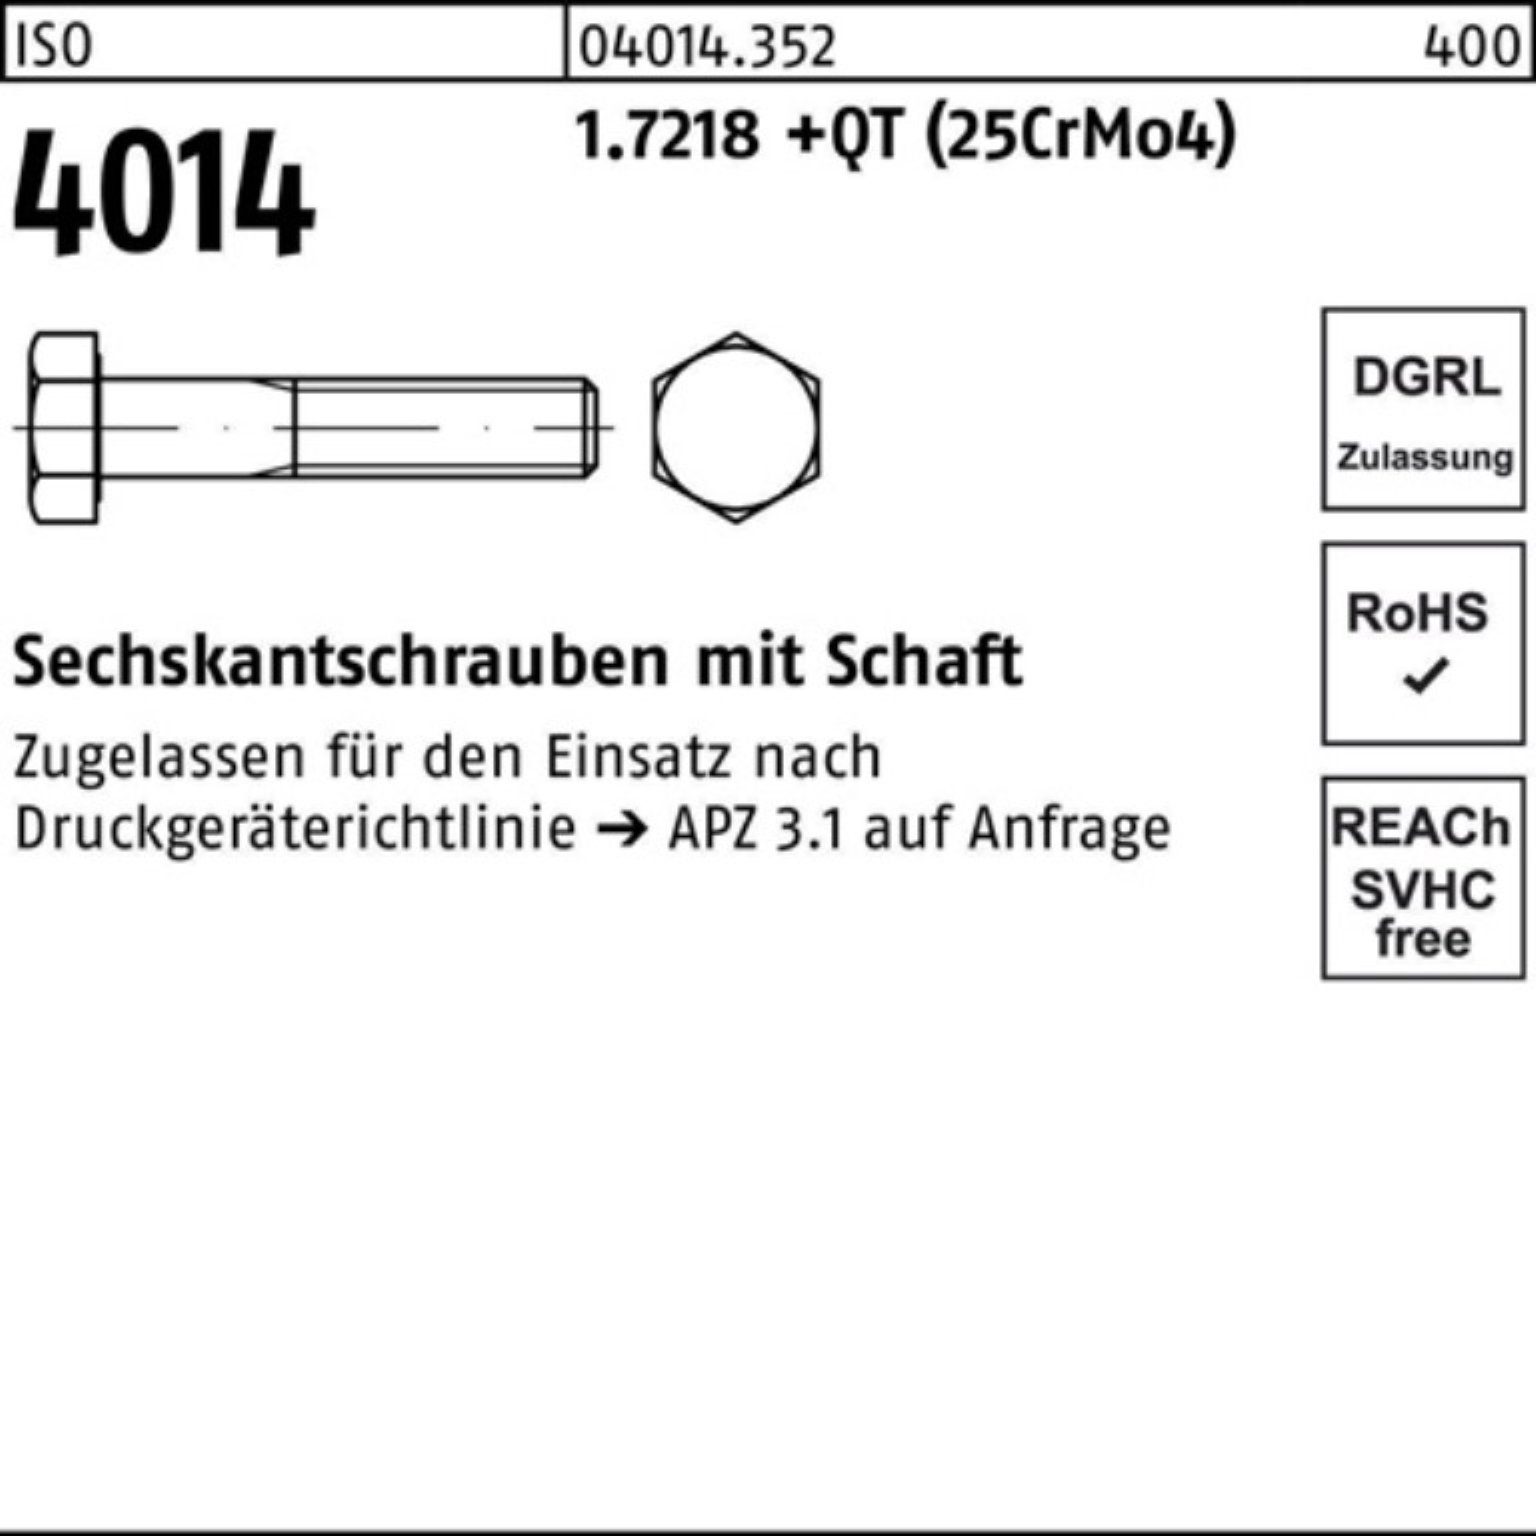 4014 100er 110 Bufab M24x Schaft Pack 1.7218 +QT Sechskantschraube Sechskantschraube ISO (25Cr